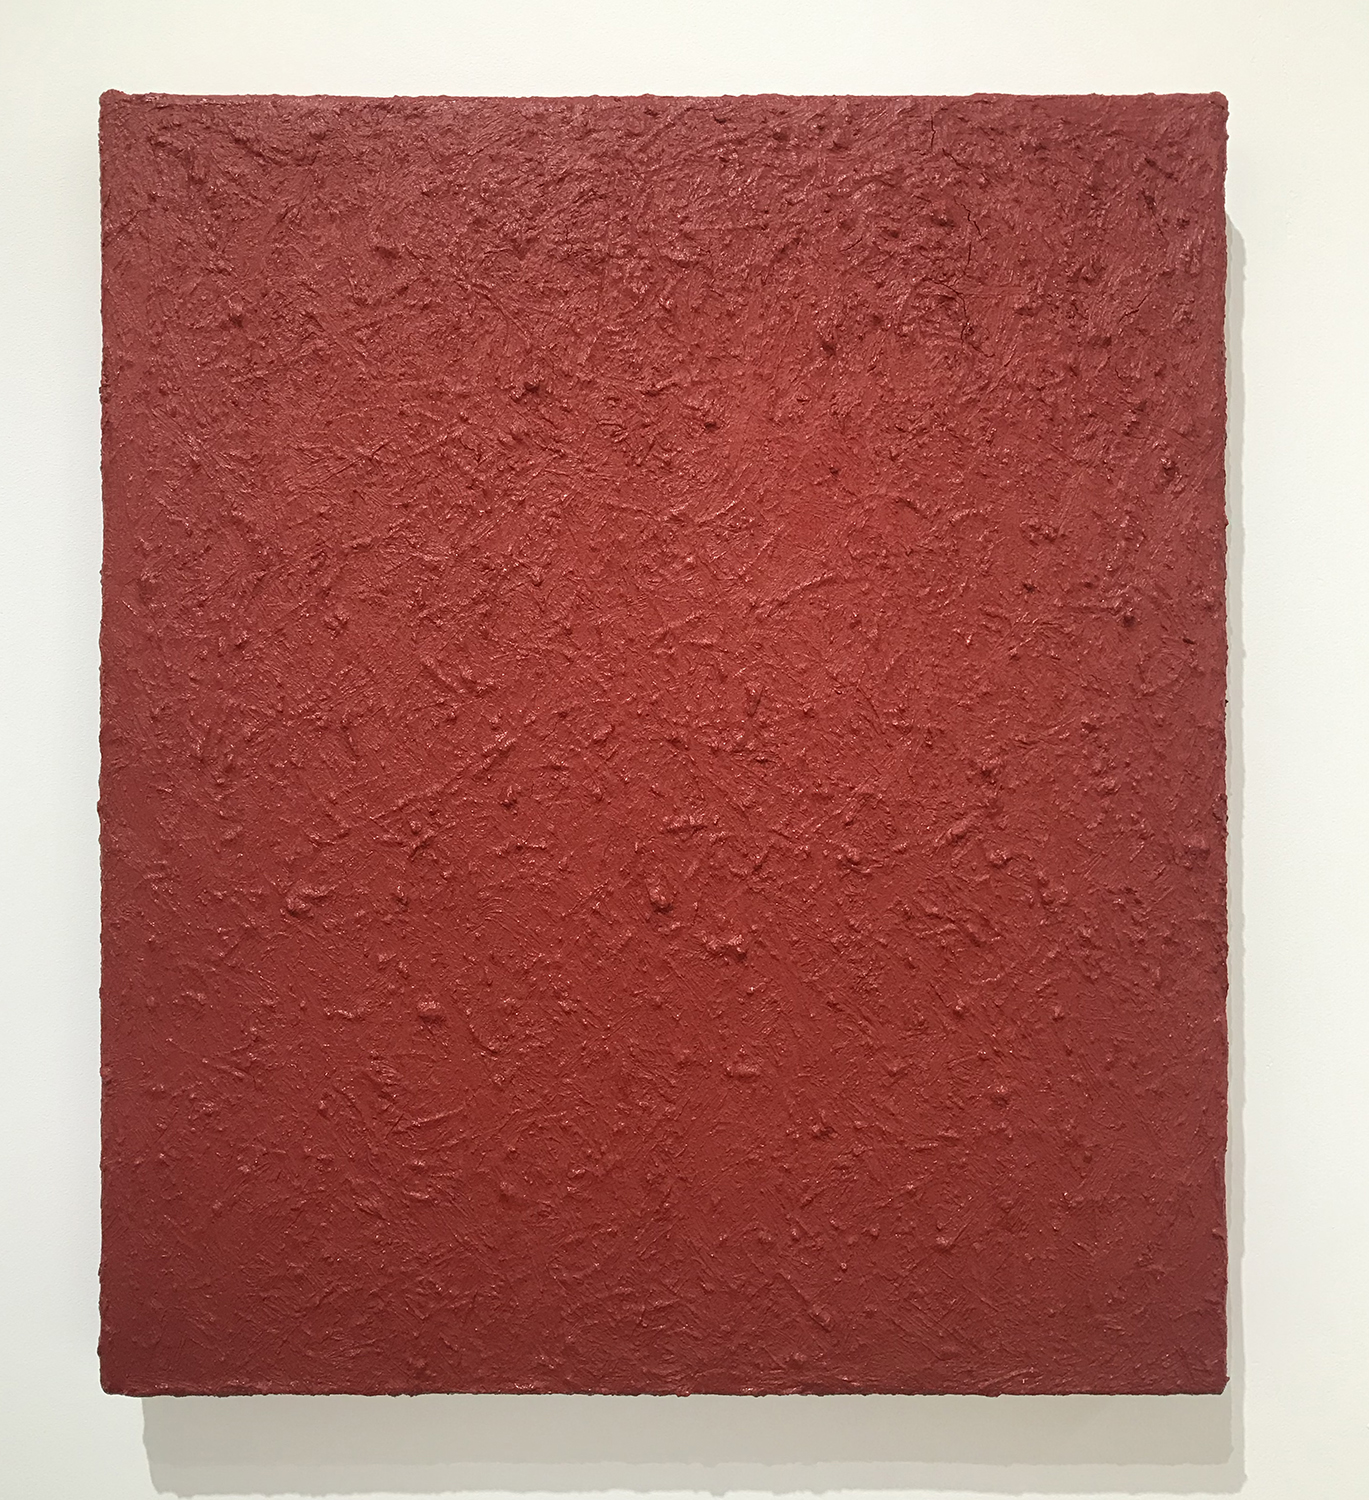 北𡌛吉彦 (YOSHIHIKO KITANO)｜Untitled-red｜Oil on canvas｜53 × 45.5 cm｜1990<br>¥150,000 - 300,000